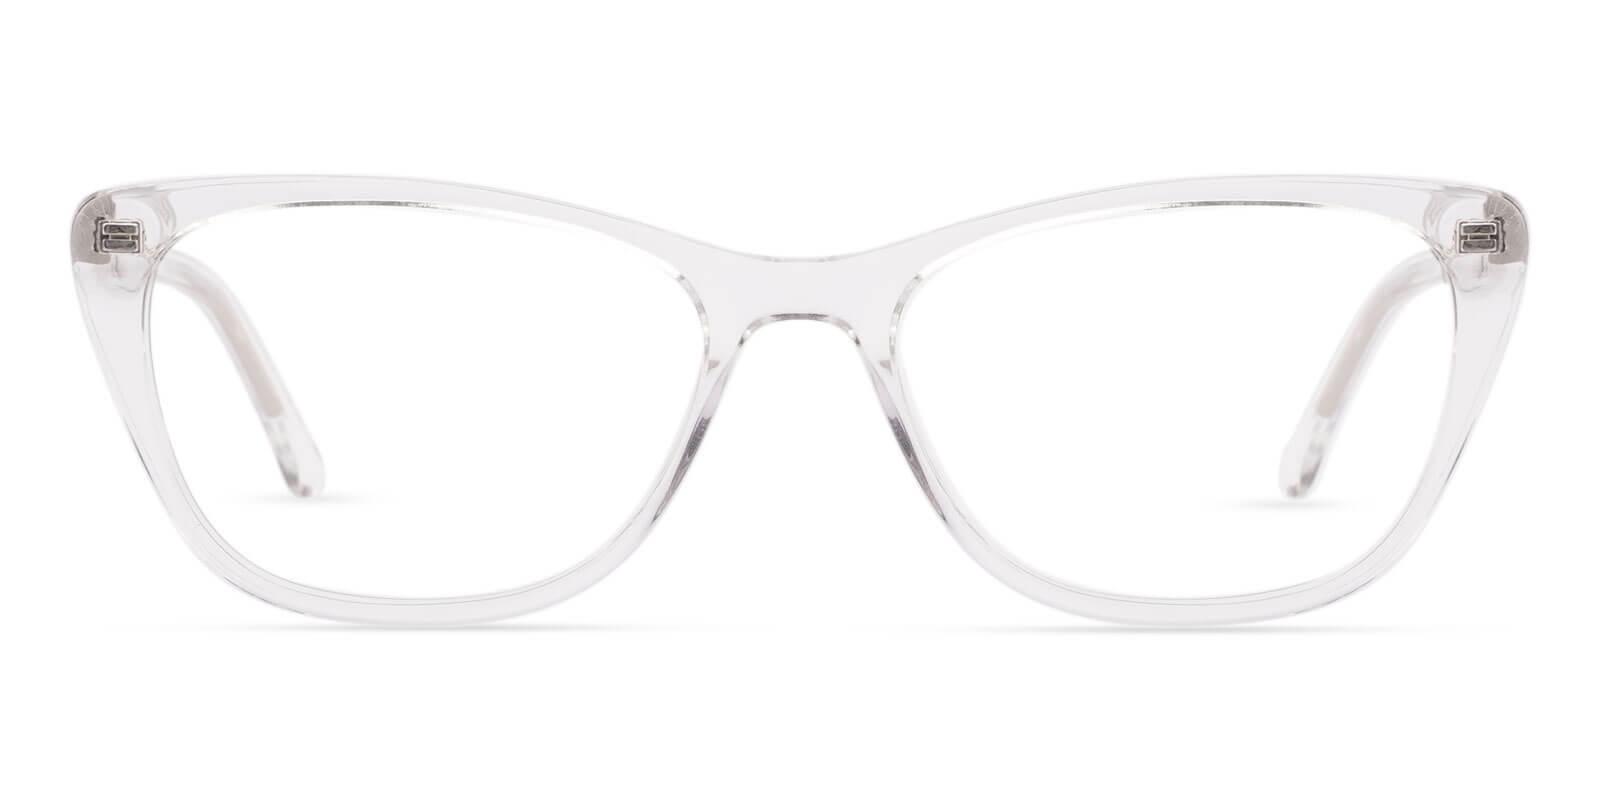 Yuke Translucent Acetate UniversalBridgeFit , SpringHinges , Eyeglasses Frames from ABBE Glasses